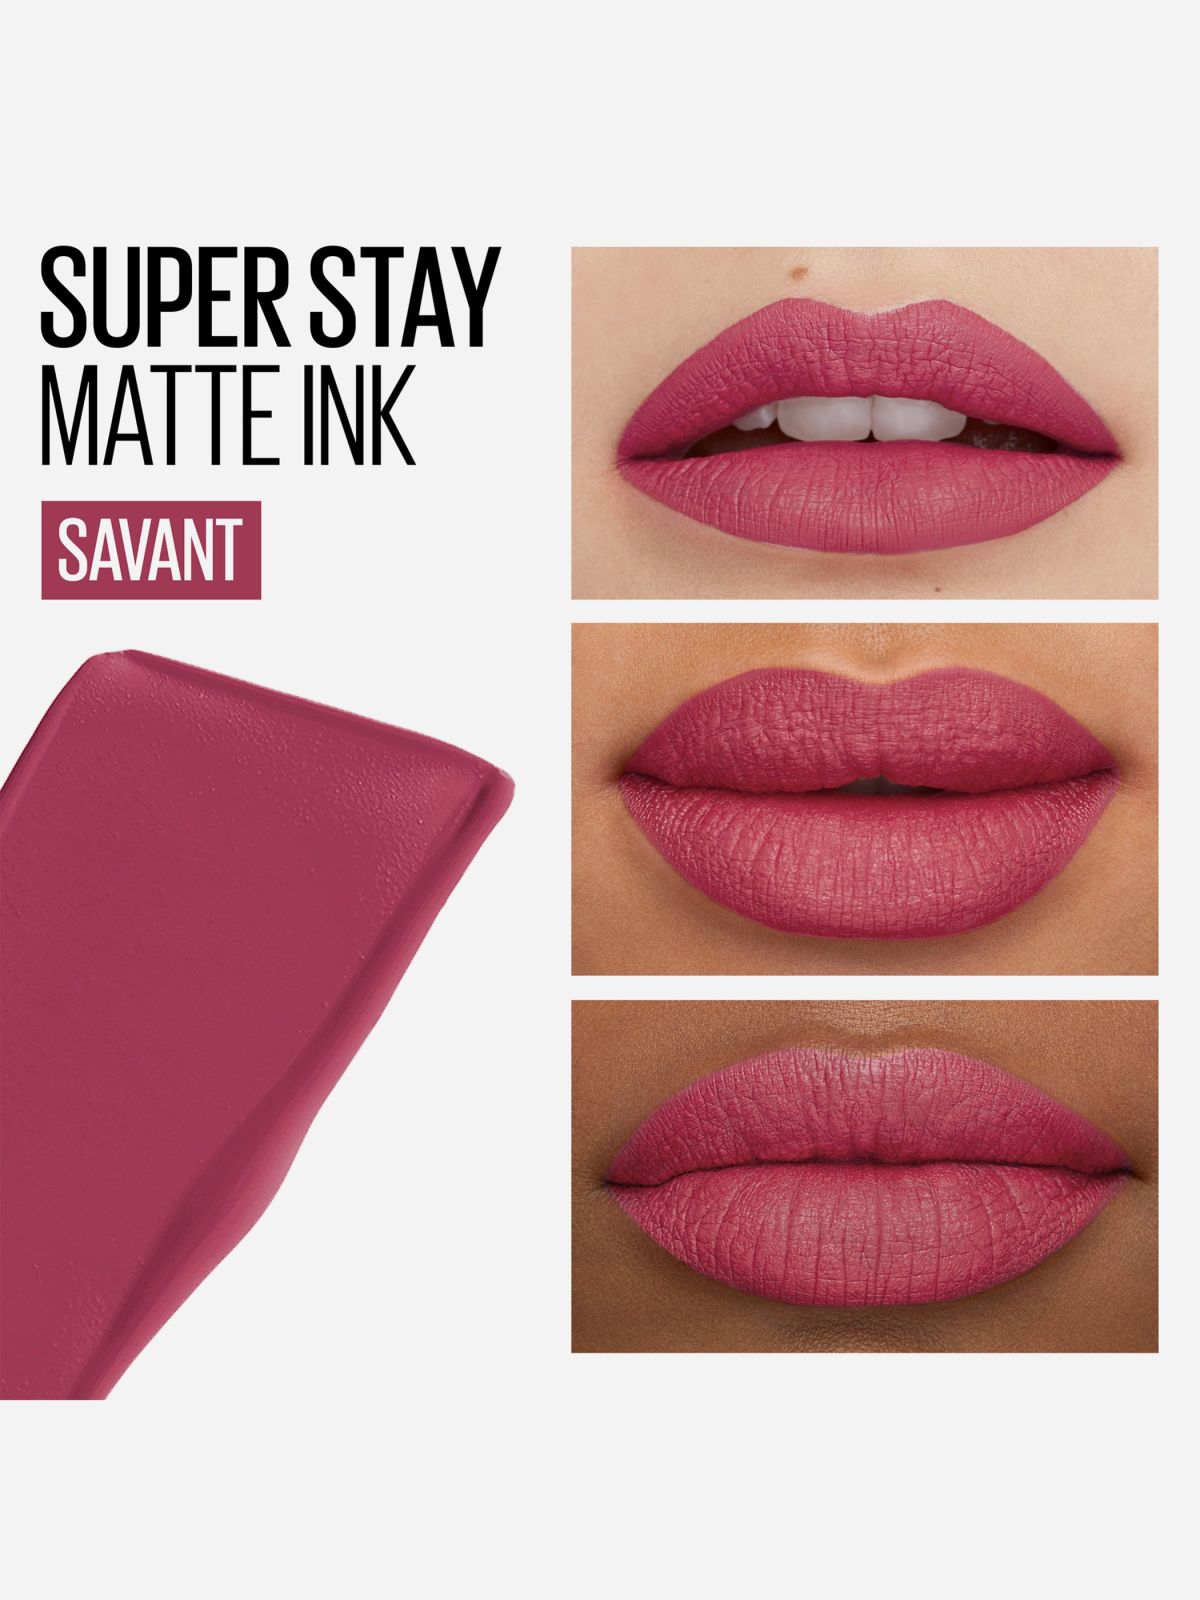  שפתון Super Stay Matte Ink של MAYBELLINE